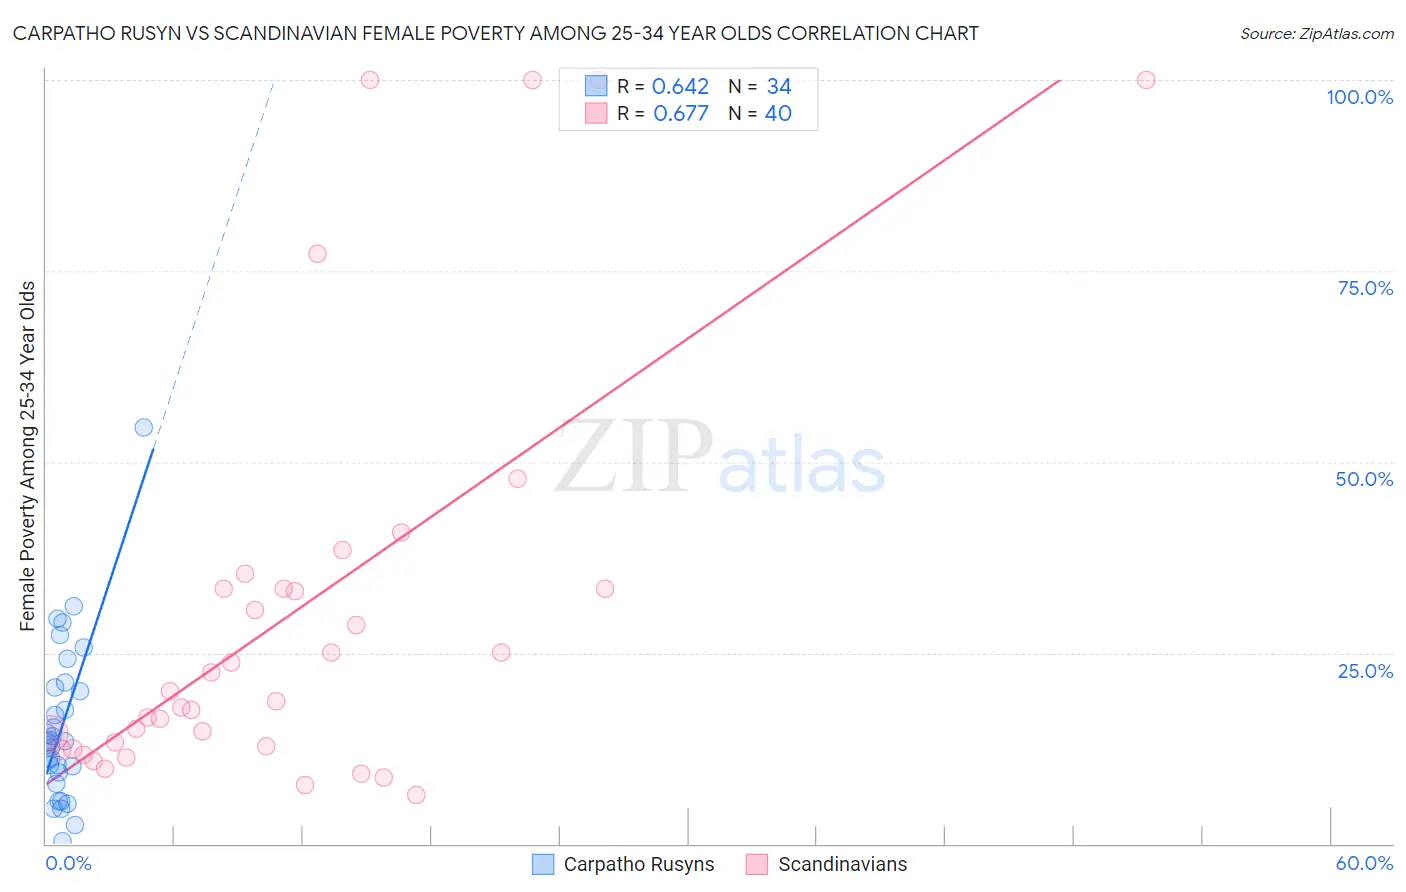 Carpatho Rusyn vs Scandinavian Female Poverty Among 25-34 Year Olds